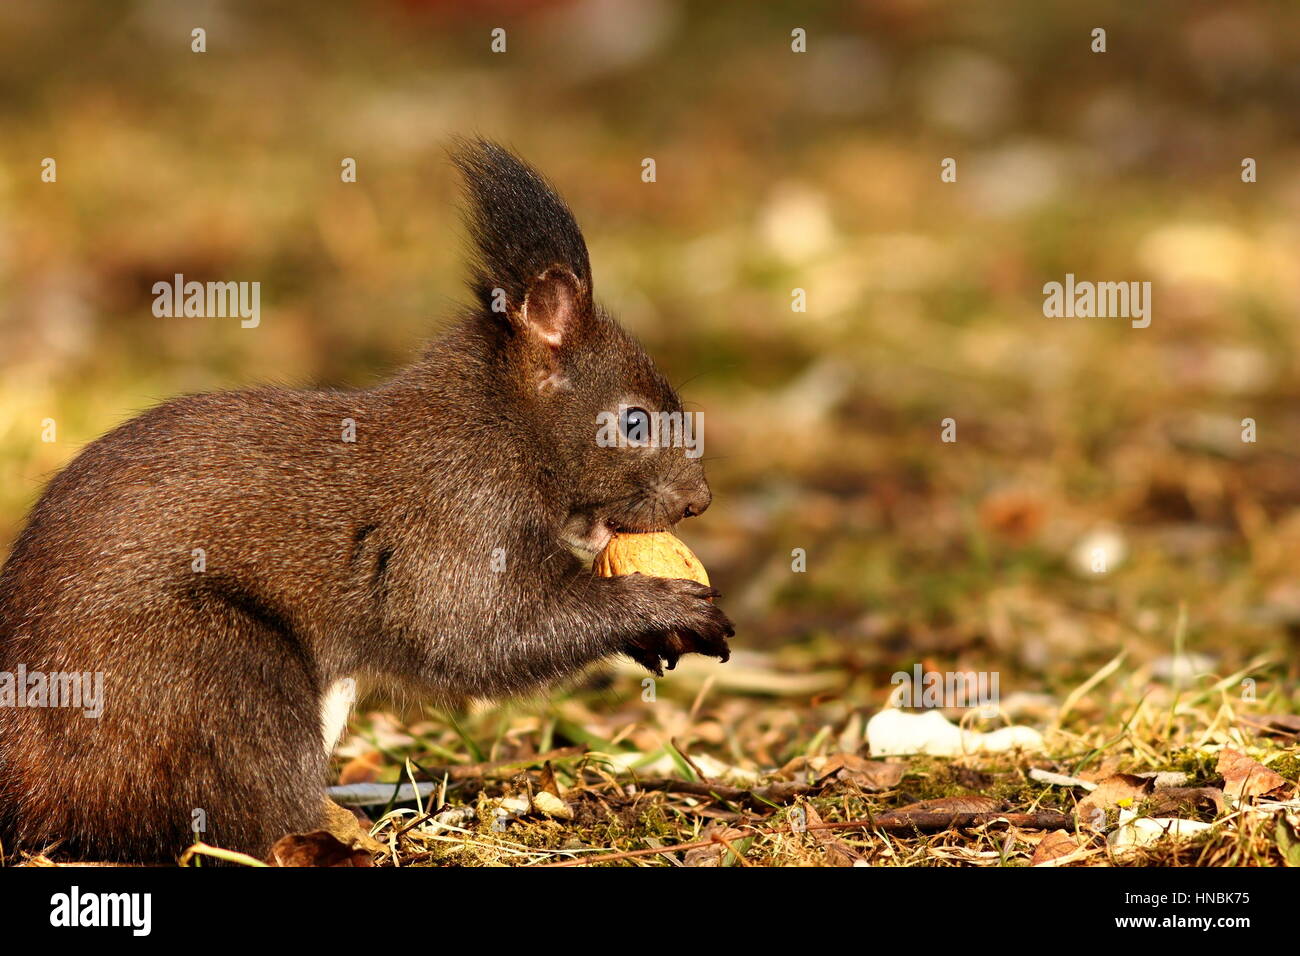 Écureuil affamé de manger l'écrou, cute animal sauvage vivant dans les parcs et jardins ( Sciurus vulgaris ) Banque D'Images